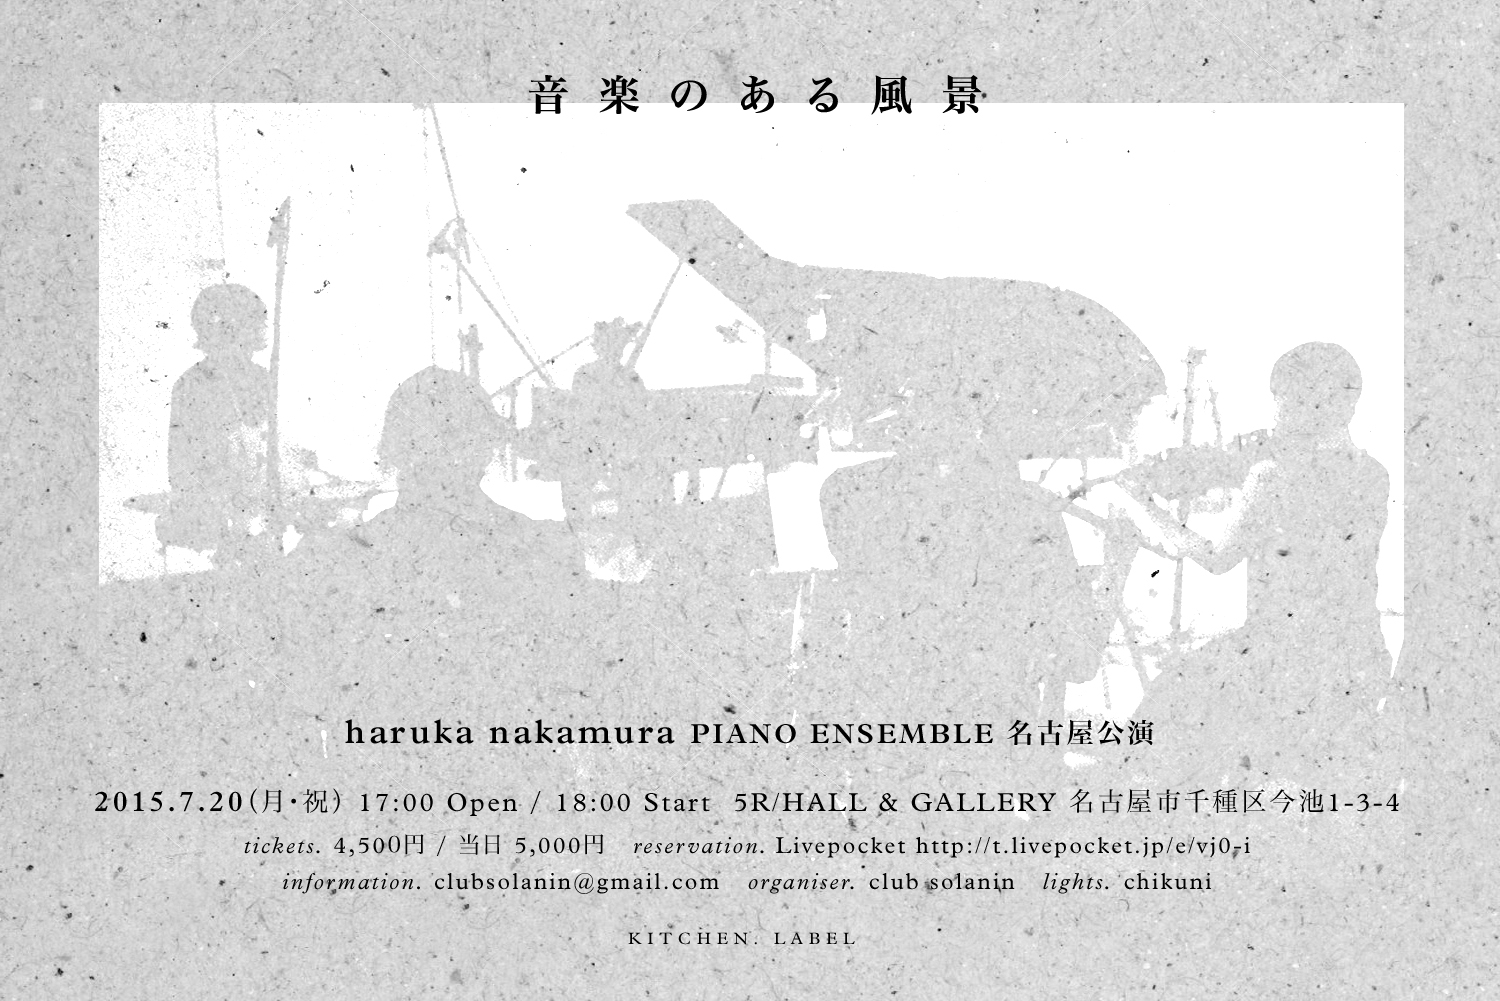 haruka nakamura PIANO ENSEMBLE『音楽のある風景』名古屋公演